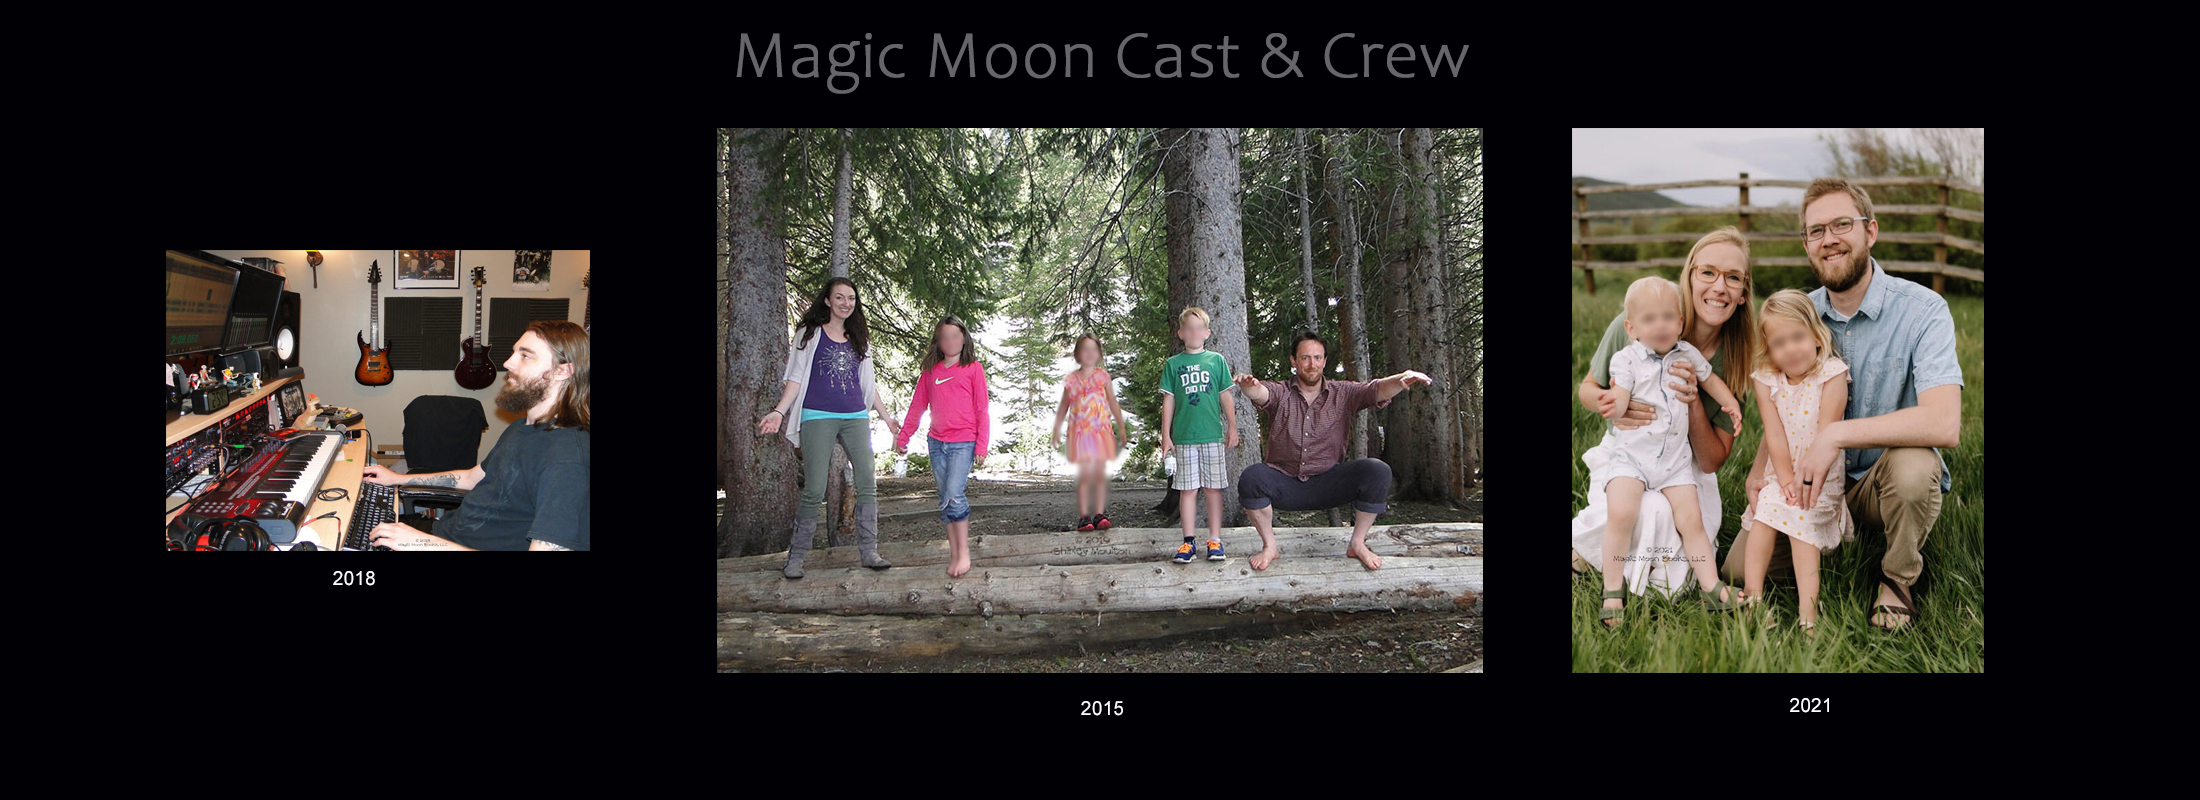 Magic Moon Cast & Crew